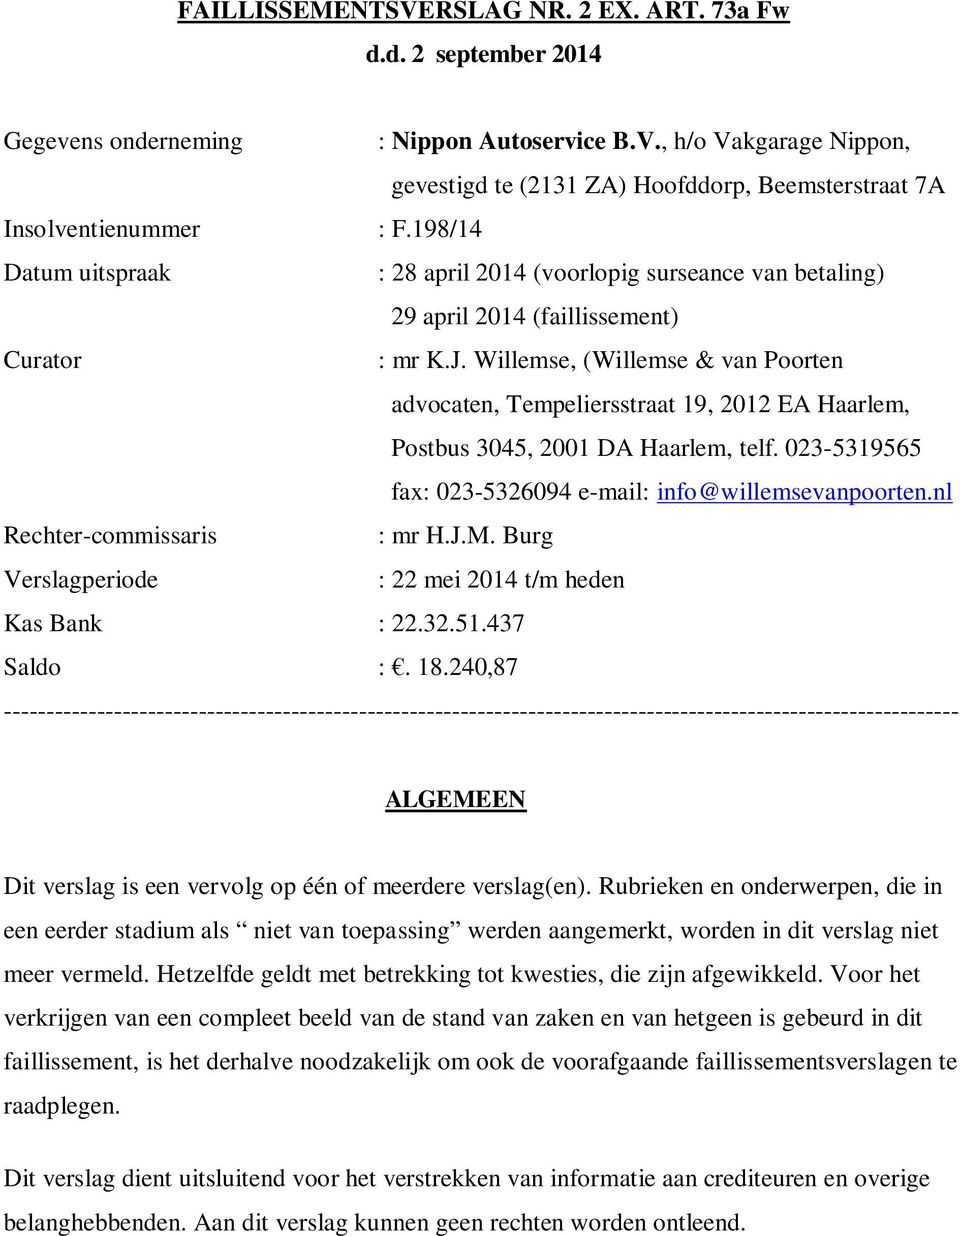 Willemse, (Willemse & van Poorten advocaten, Tempeliersstraat 19, 2012 EA Haarlem, Postbus 3045, 2001 DA Haarlem, telf. 023-5319565 fax: 023-5326094 e-mail: info@willemsevanpoorten.